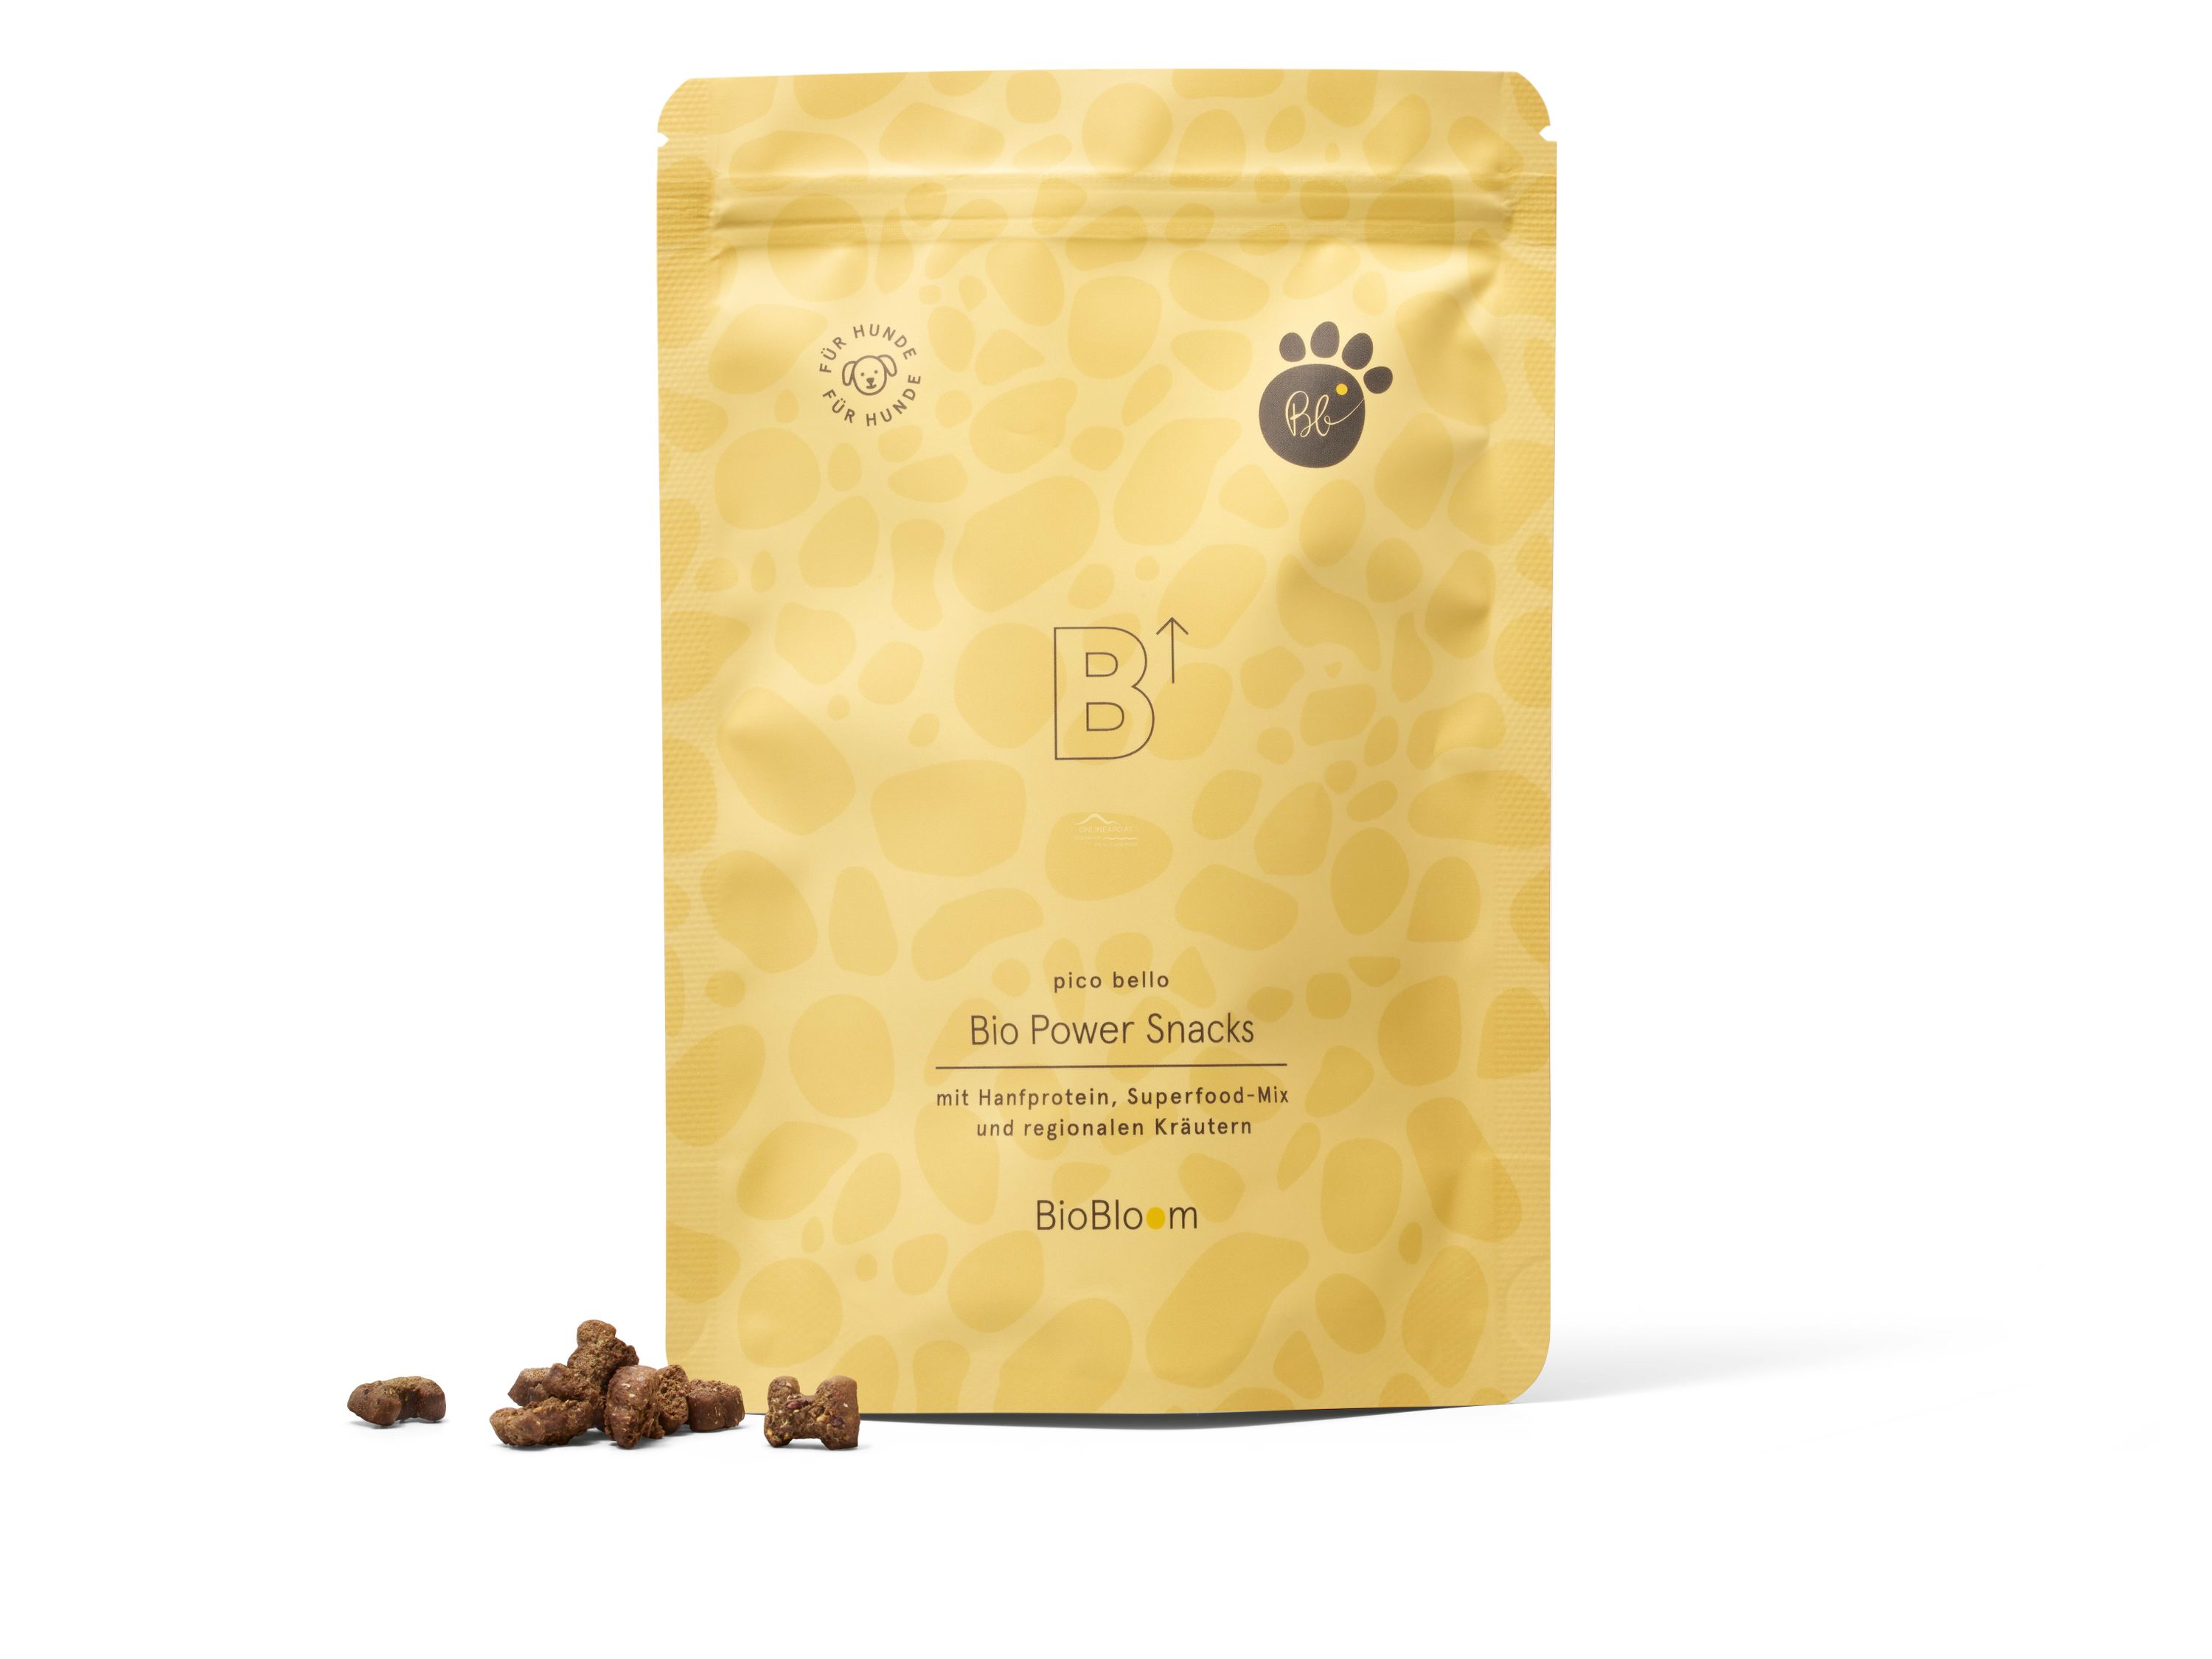 BioBloom pico bello Bio Power Snacks für Hunde